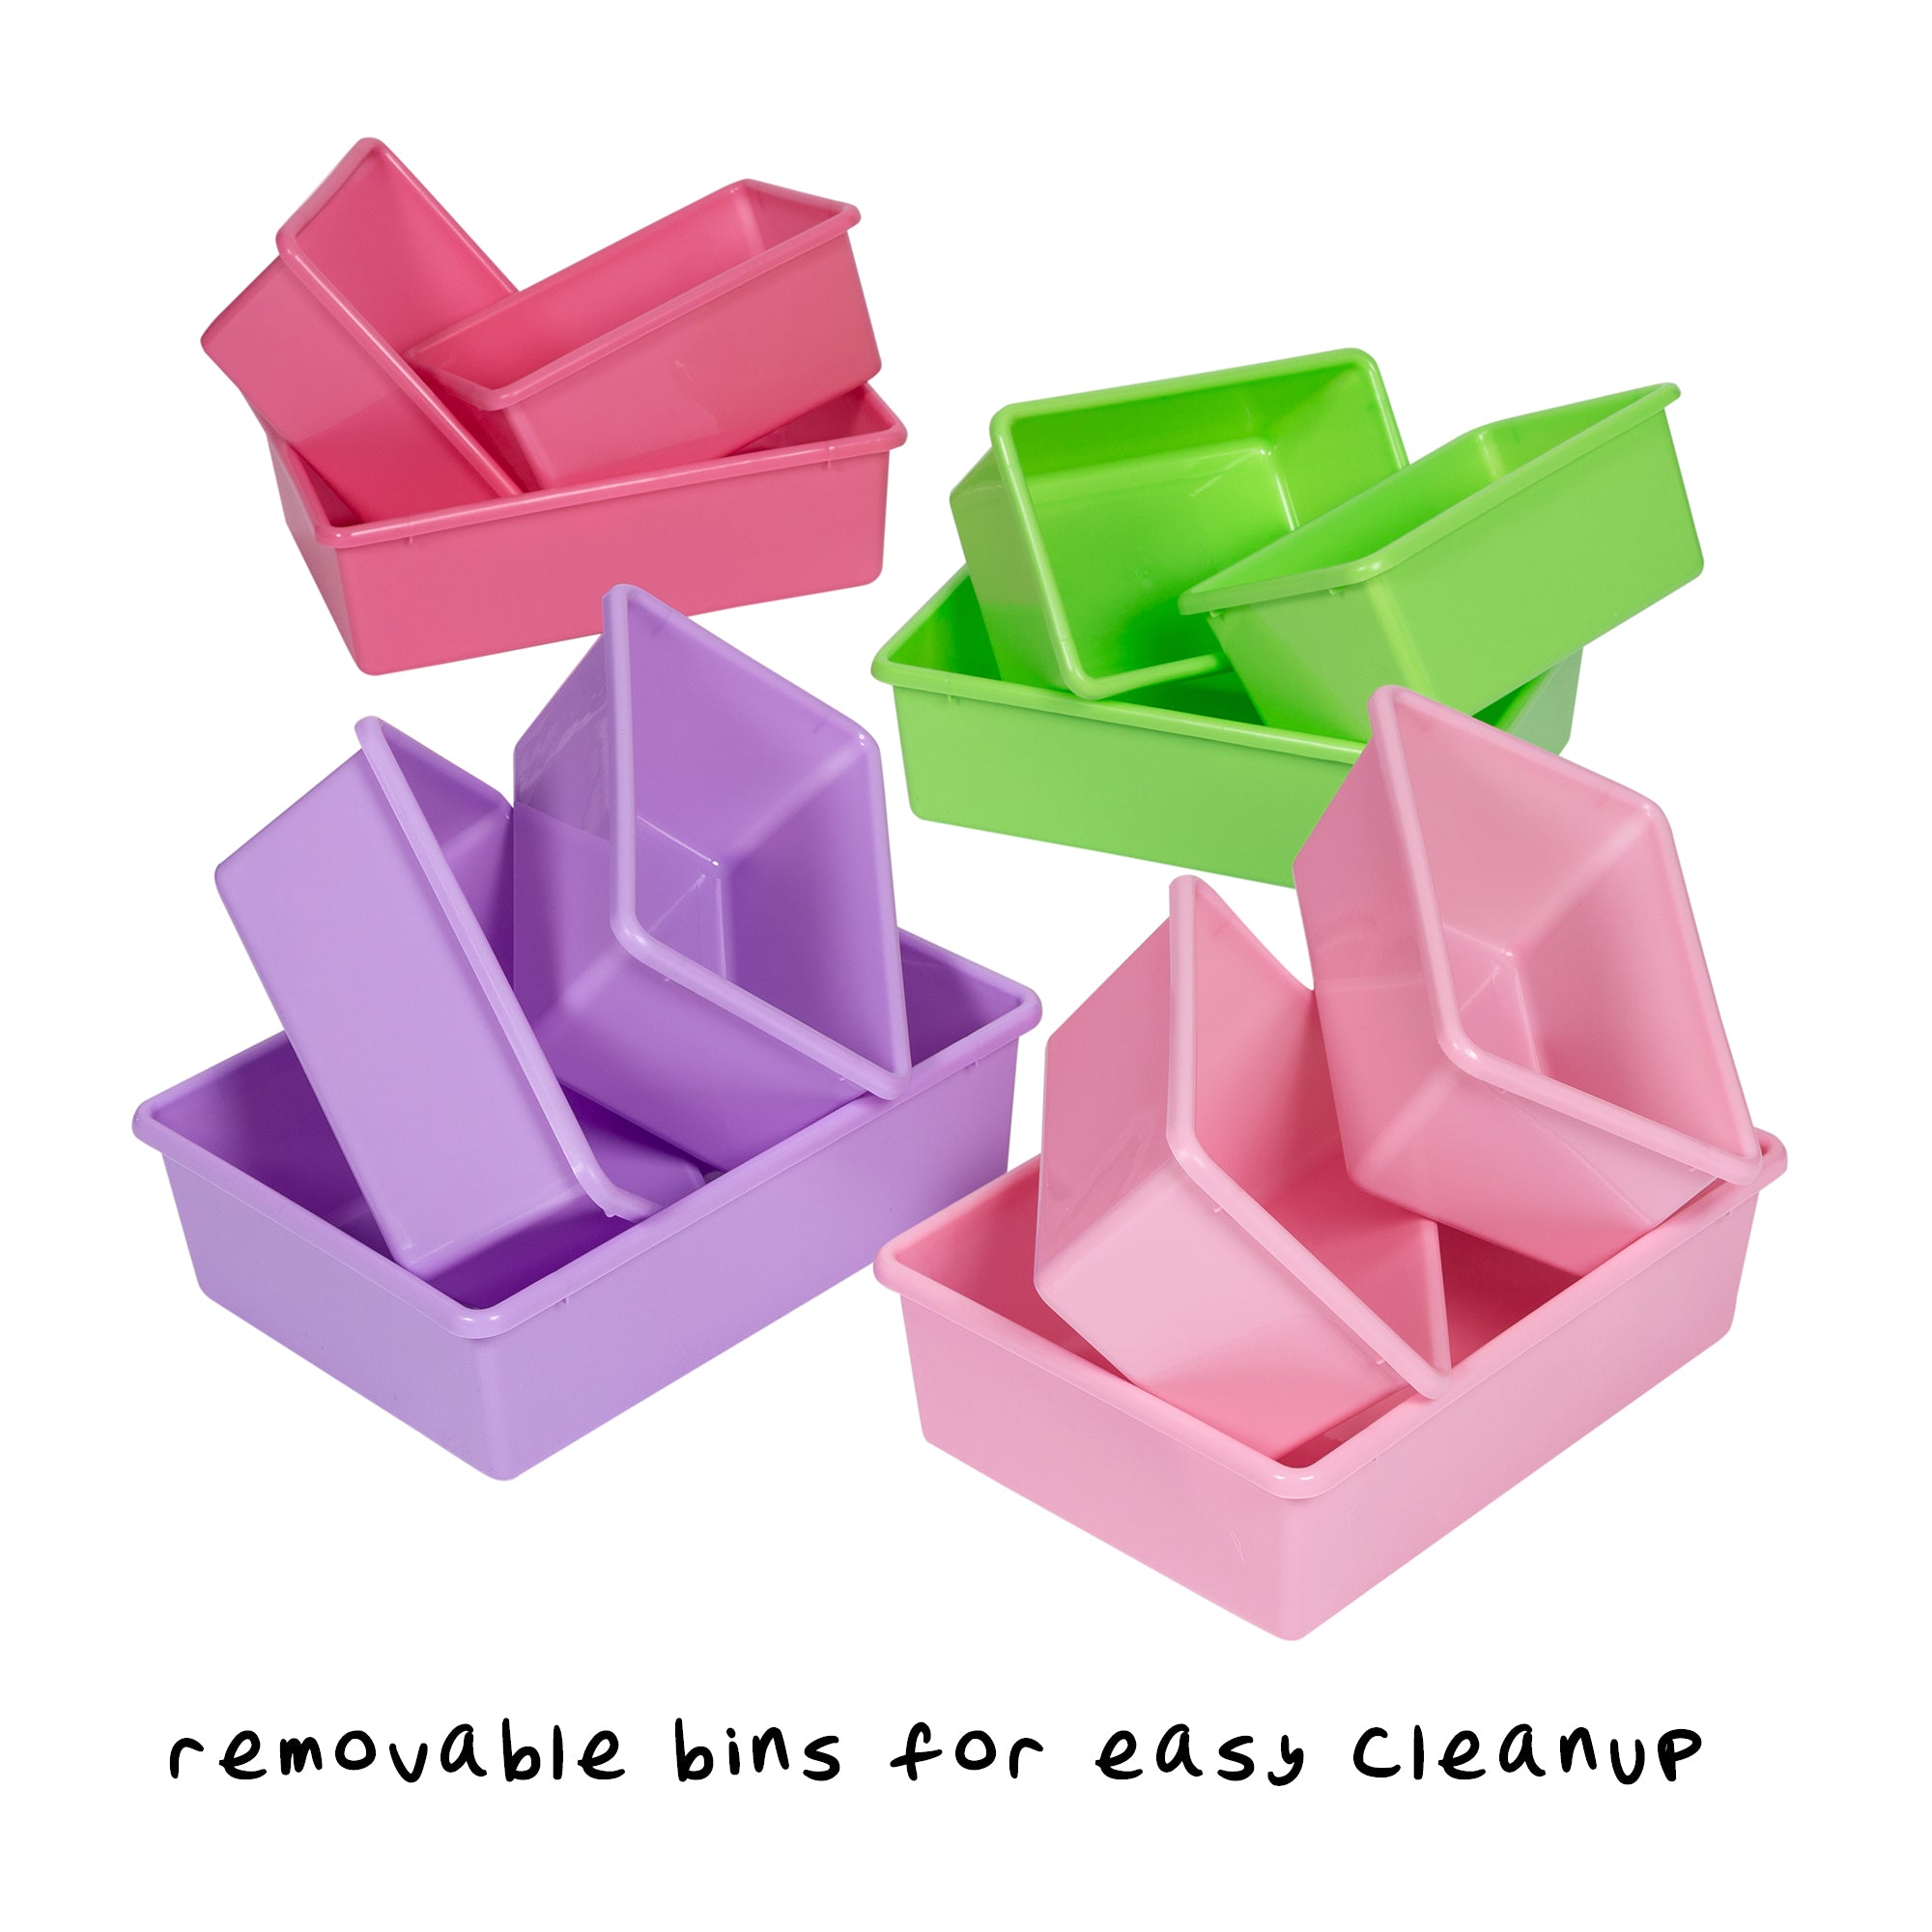 Your Zone Mocha Plastic Toy Storage Organizer with 12 White Plastic Storage Bins